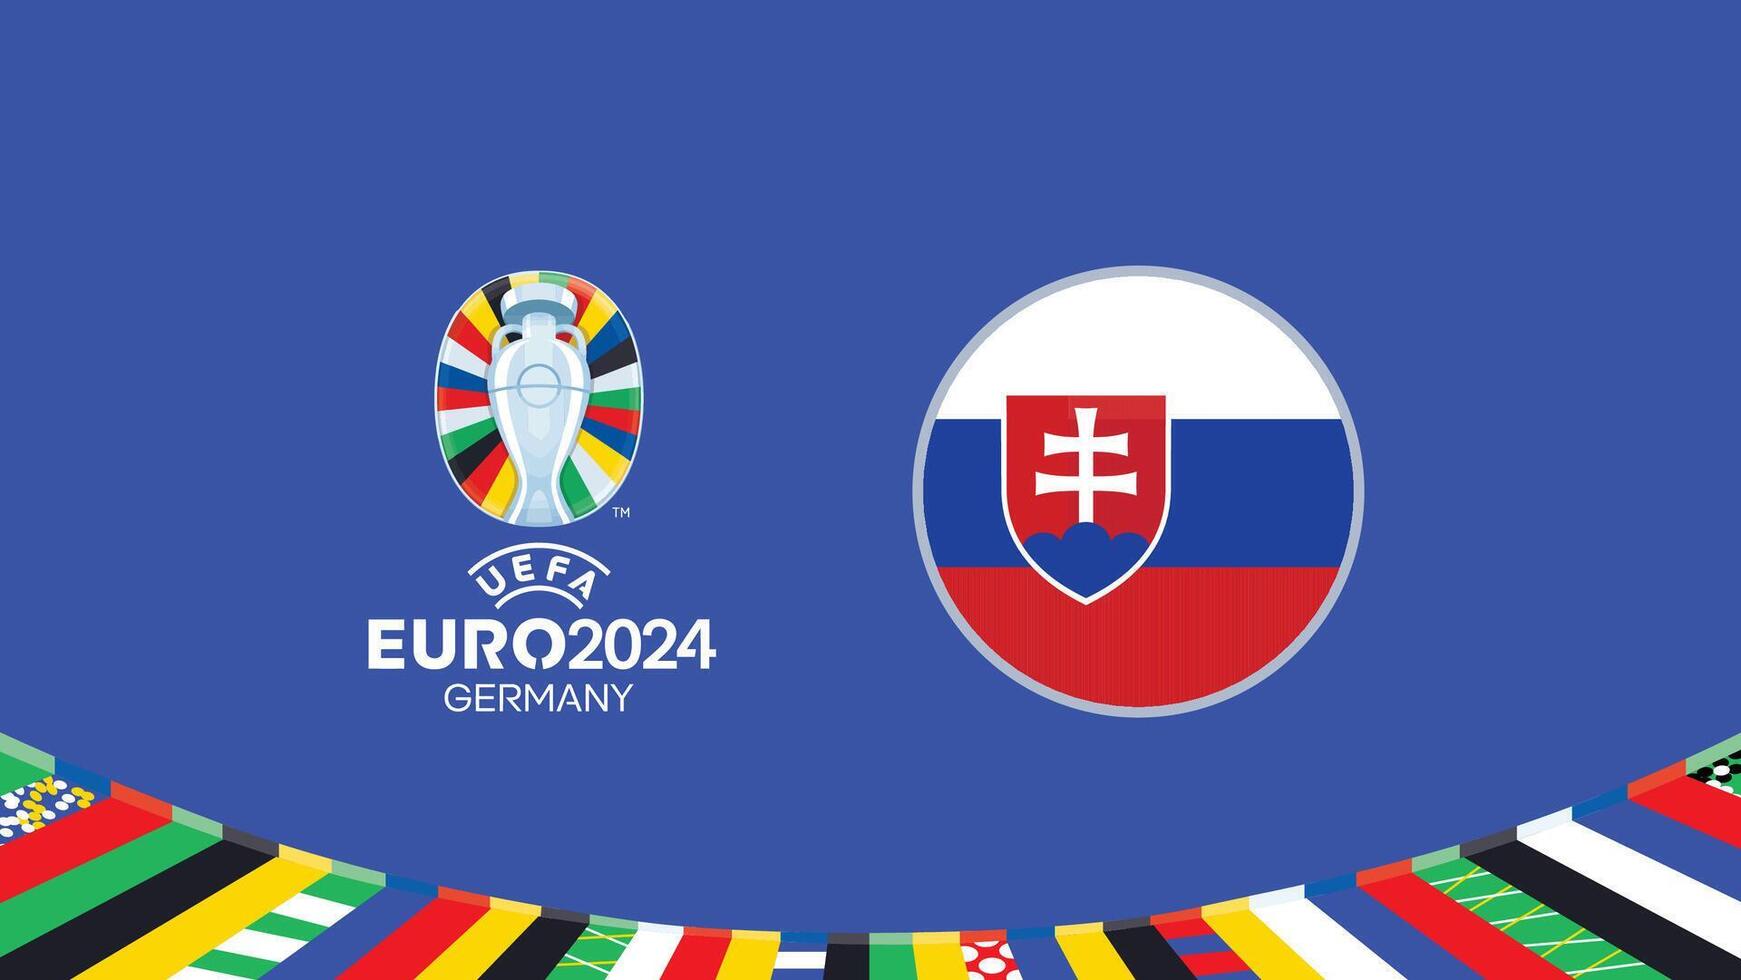 euro 2024 Alemanha Eslováquia bandeira equipes Projeto com oficial símbolo logotipo abstrato países europeu futebol ilustração vetor